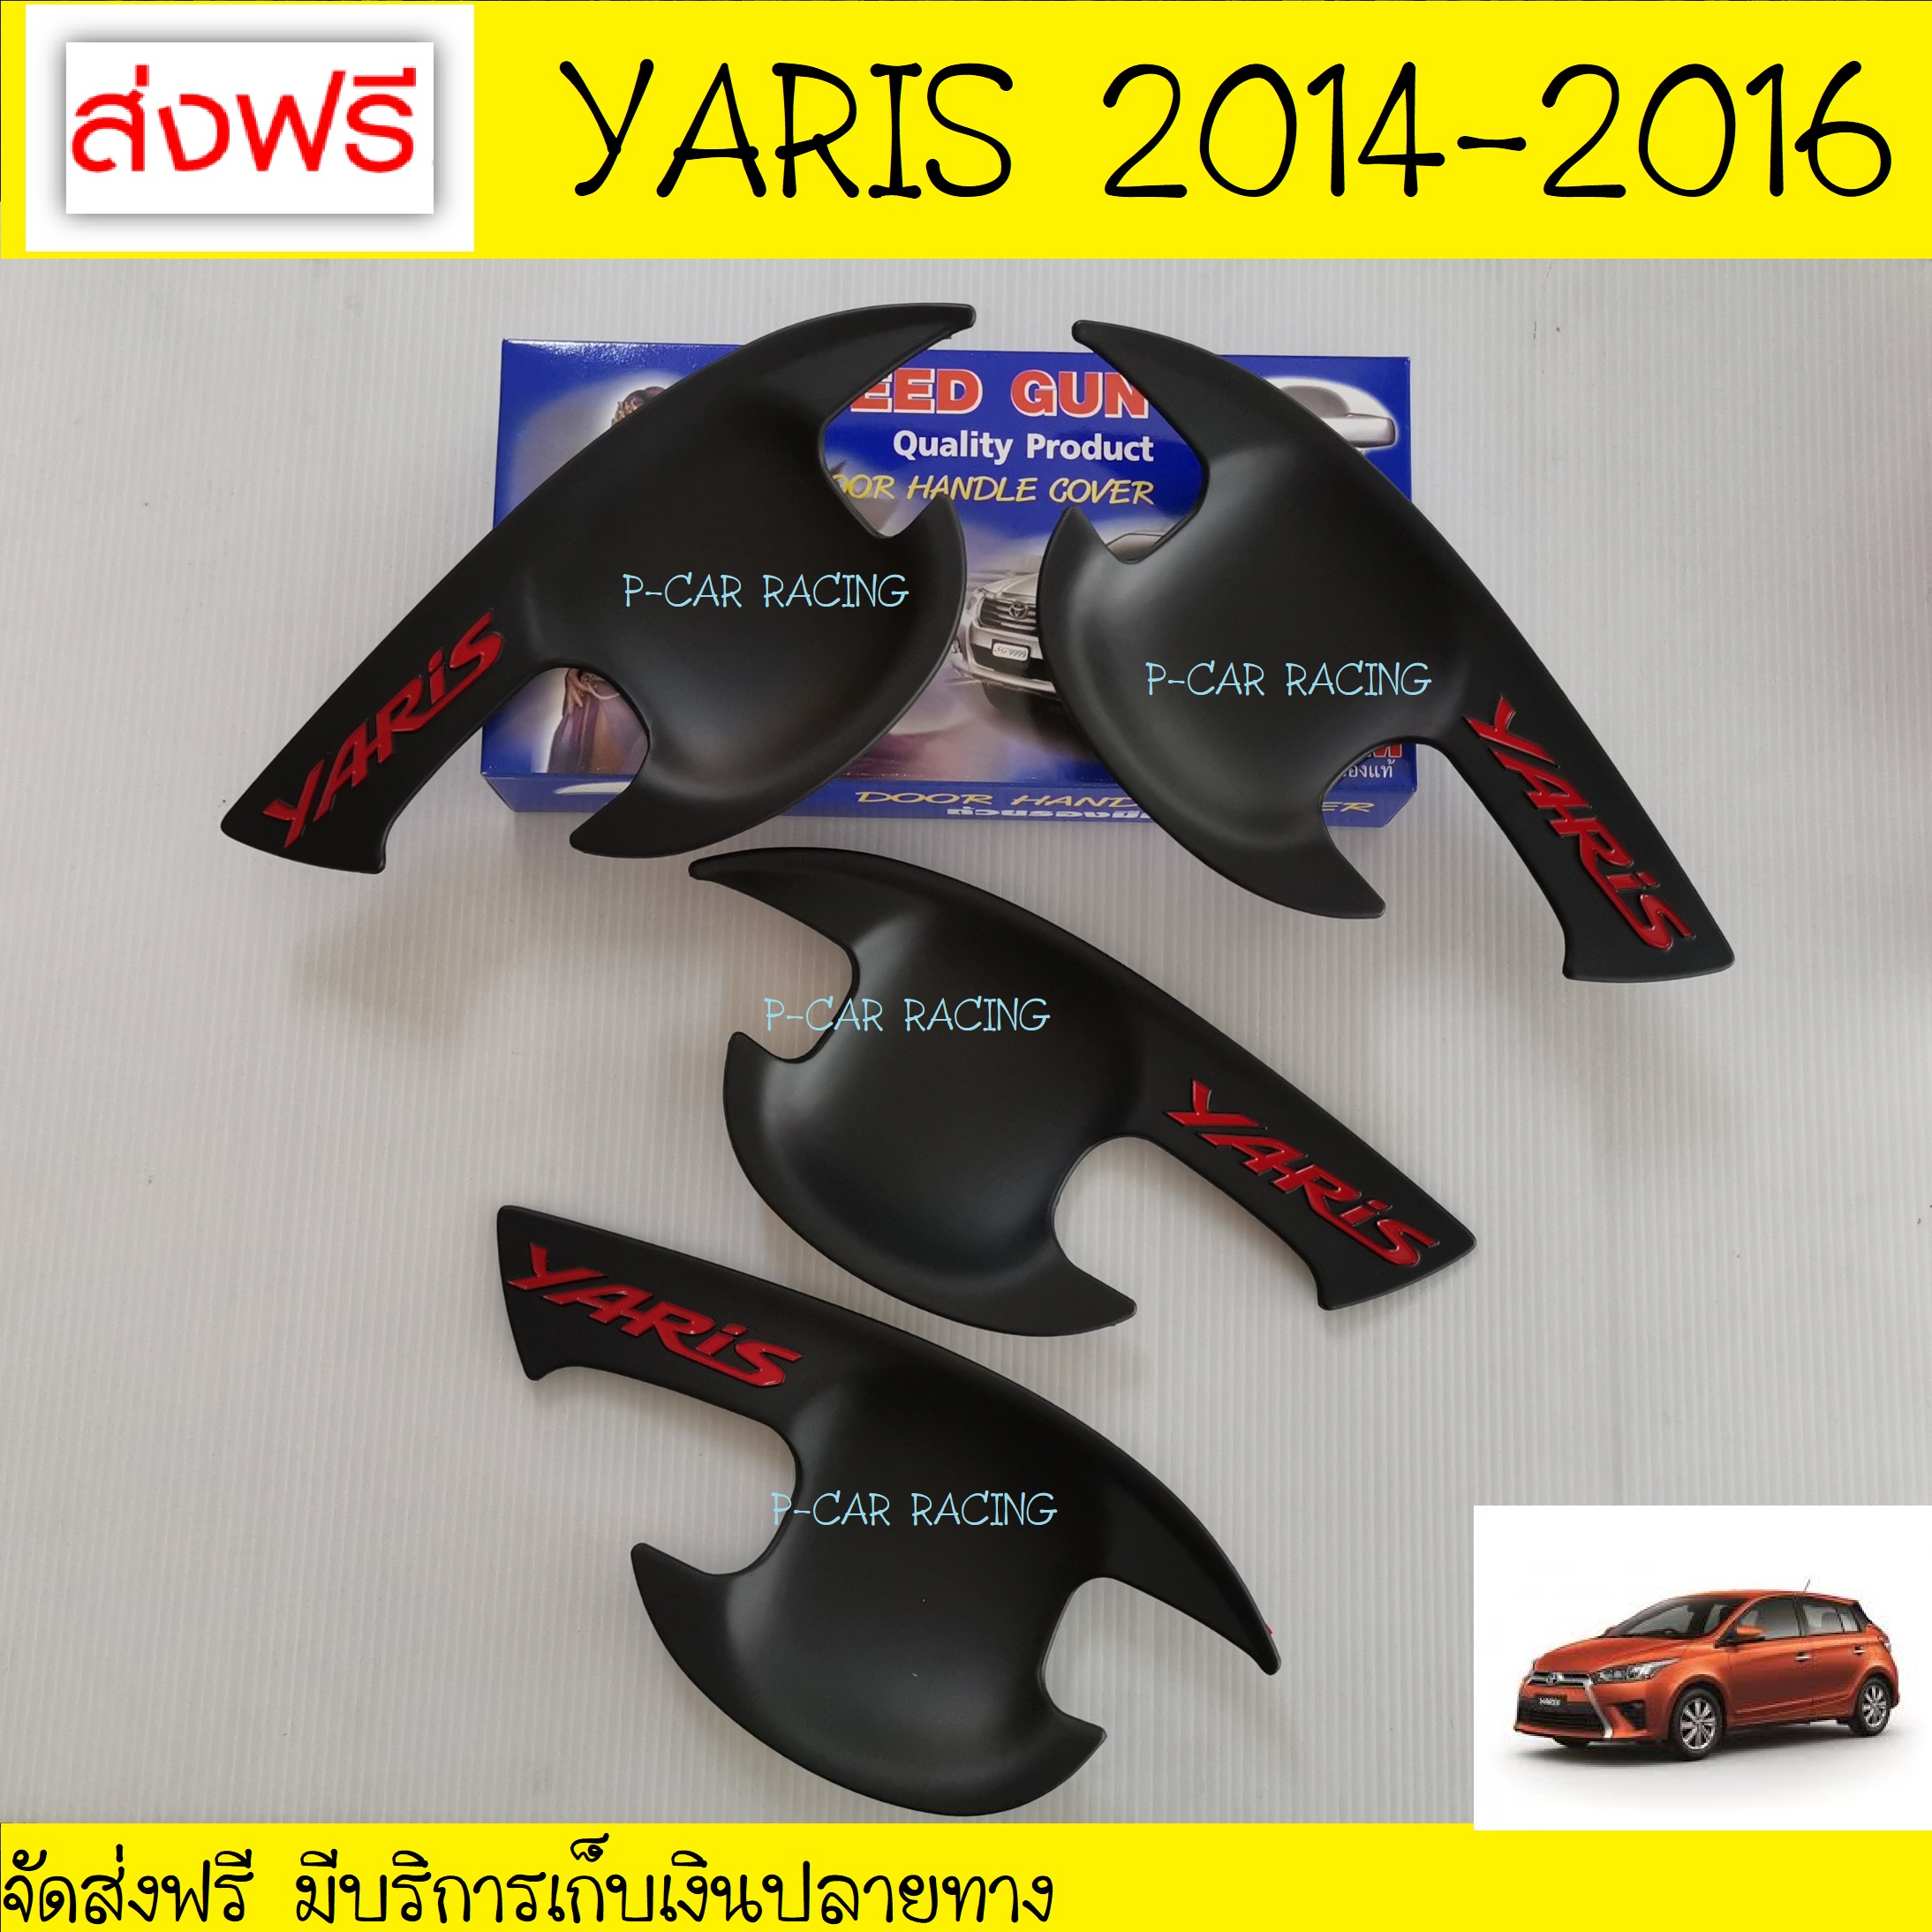 เบ้ารองมือเปิดประตูYaris 2013 ดำด้าน+โลโก้แดง 4 ชิ้น โตโยต้า ยาริส Toyota Yaris 2014 2015 2016 (SG)